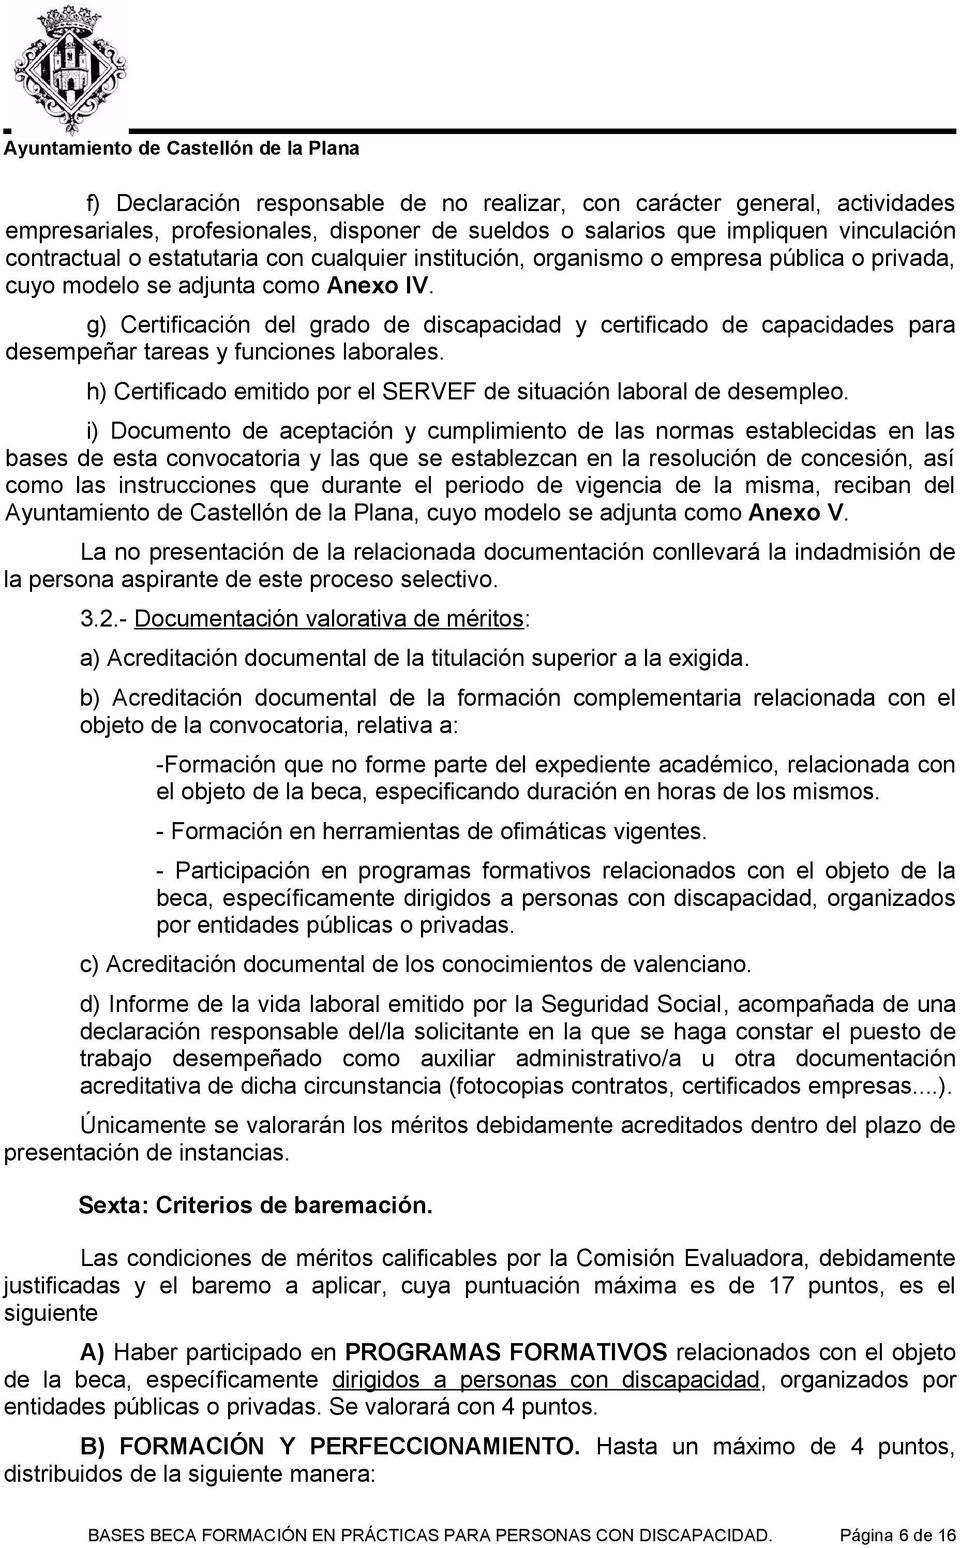 g) Certificación del grado de discapacidad y certificado de capacidades para desempeñar tareas y funciones laborales. h) Certificado emitido por el SERVEF de situación laboral de desempleo.